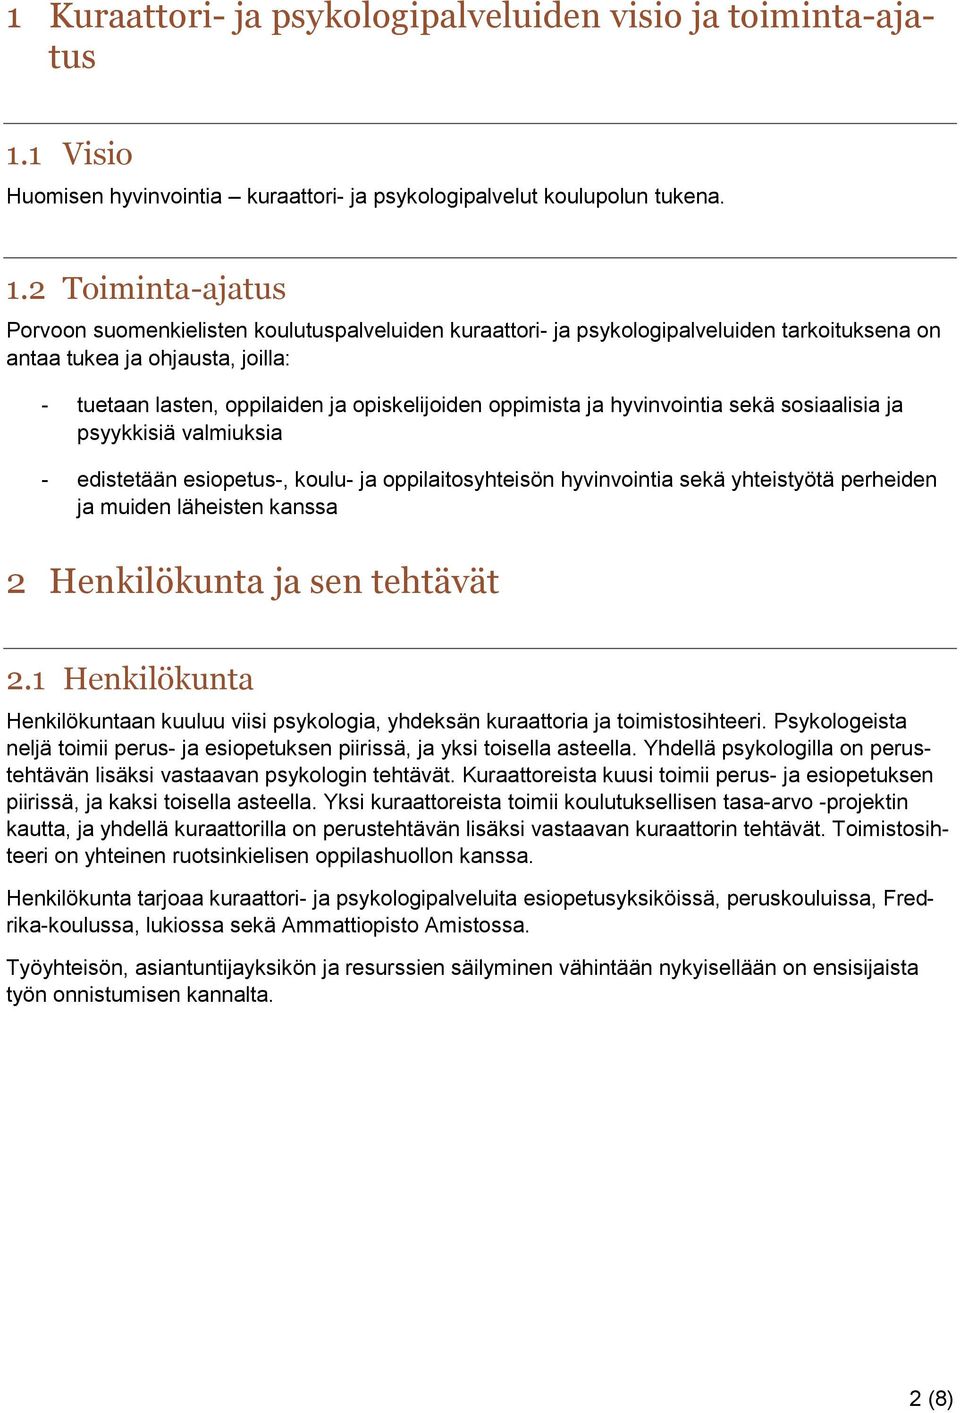 2 Toiminta-ajatus Porvoon suomenkielisten koulutuspalveluiden kuraattori- ja psykologipalveluiden tarkoituksena on antaa tukea ja ohjausta, joilla: - tuetaan lasten, oppilaiden ja opiskelijoiden